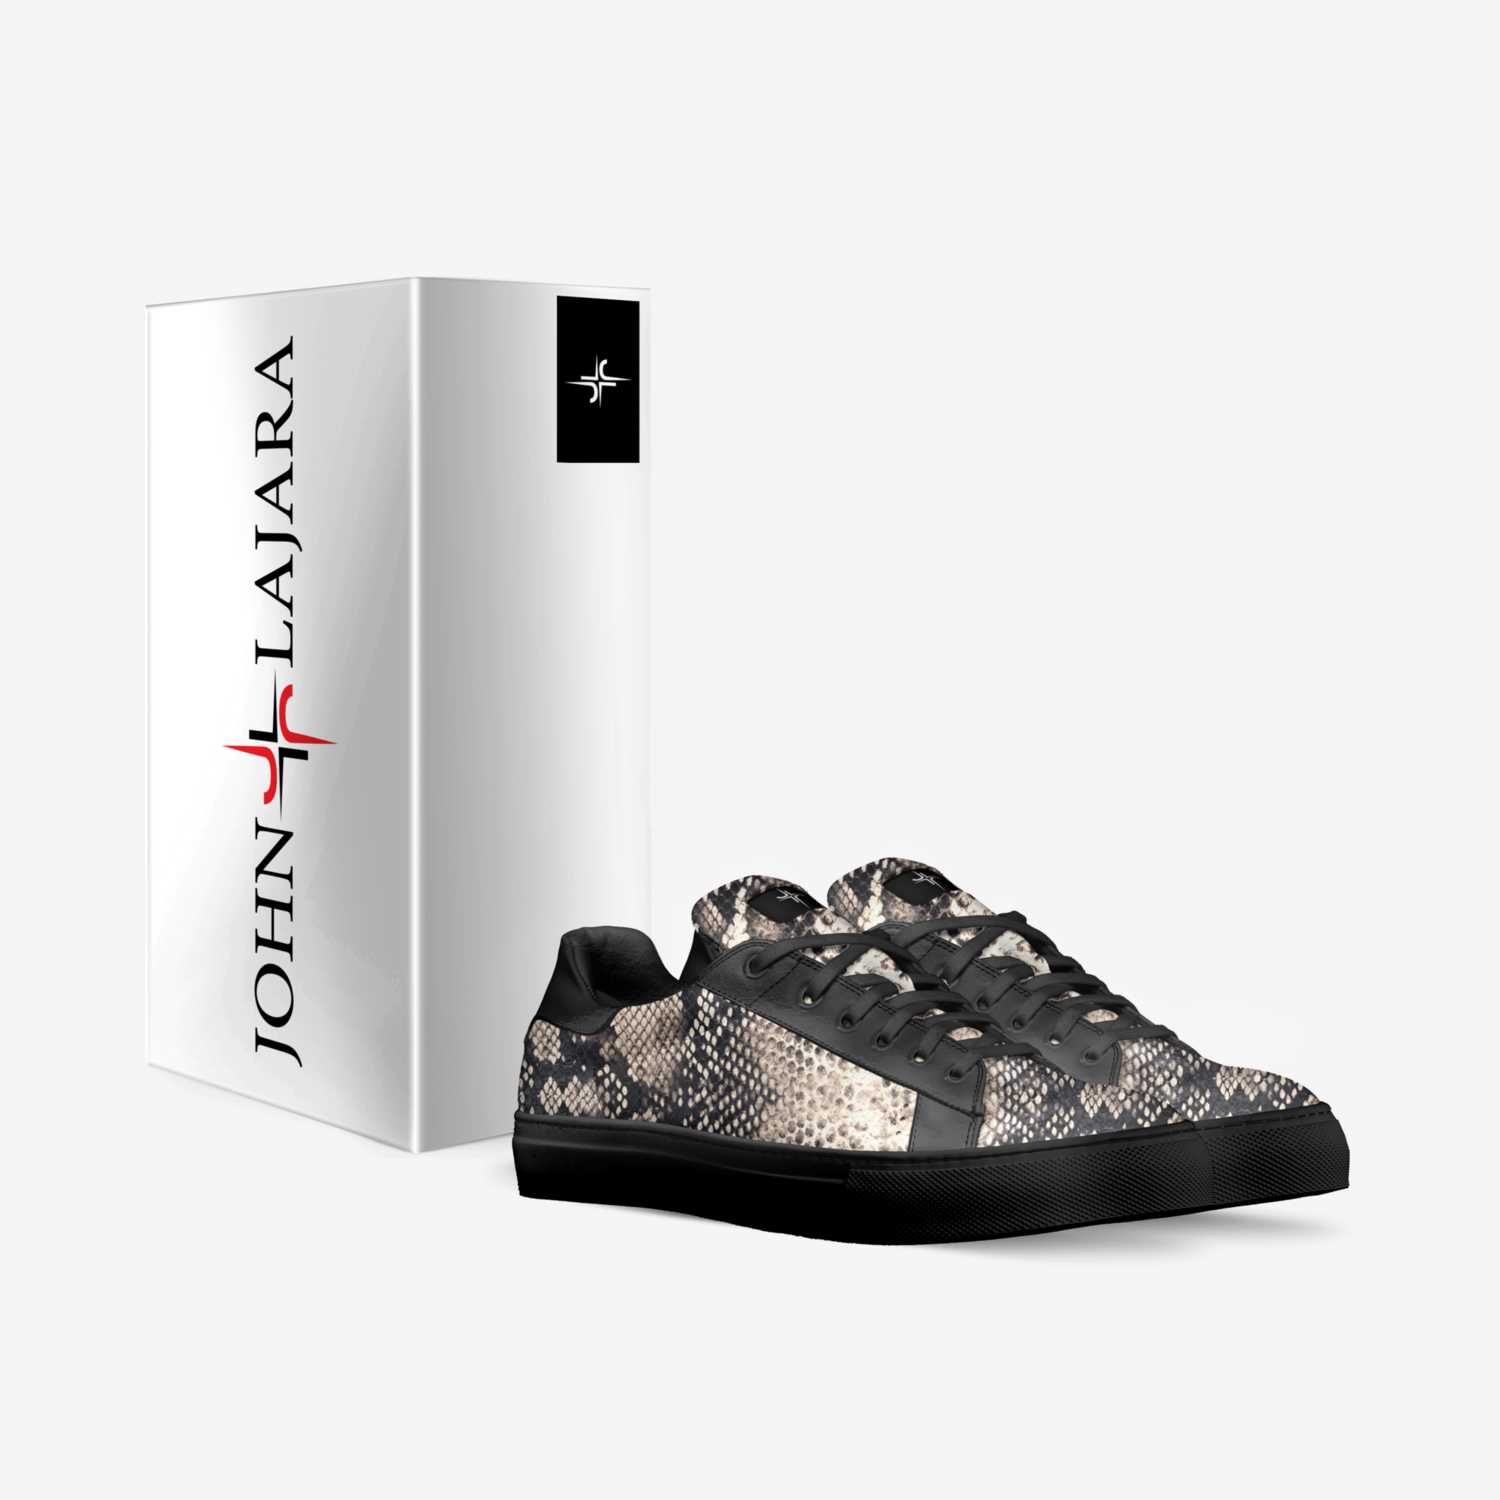 JOHN LAJARA custom made in Italy shoes by John Lajara | Box view